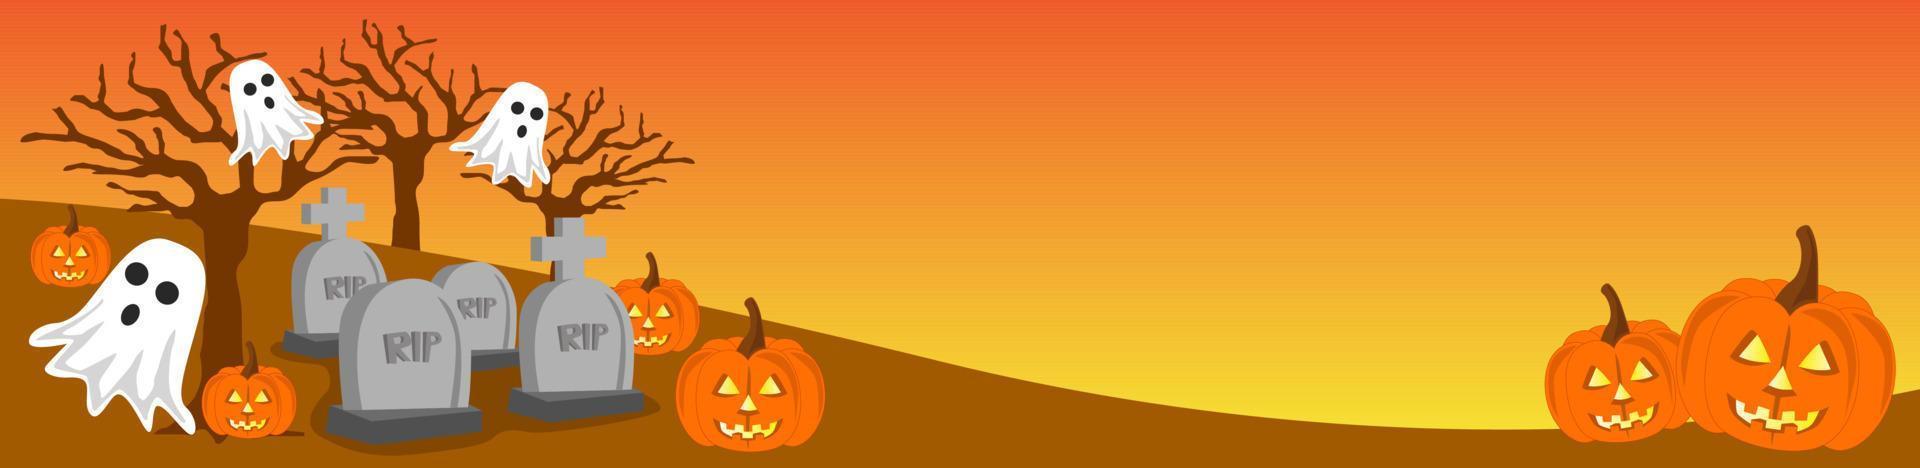 halloween baner illustration, med domkraft o lykta tema, spöke och läskigt begravning atmosfär vektor